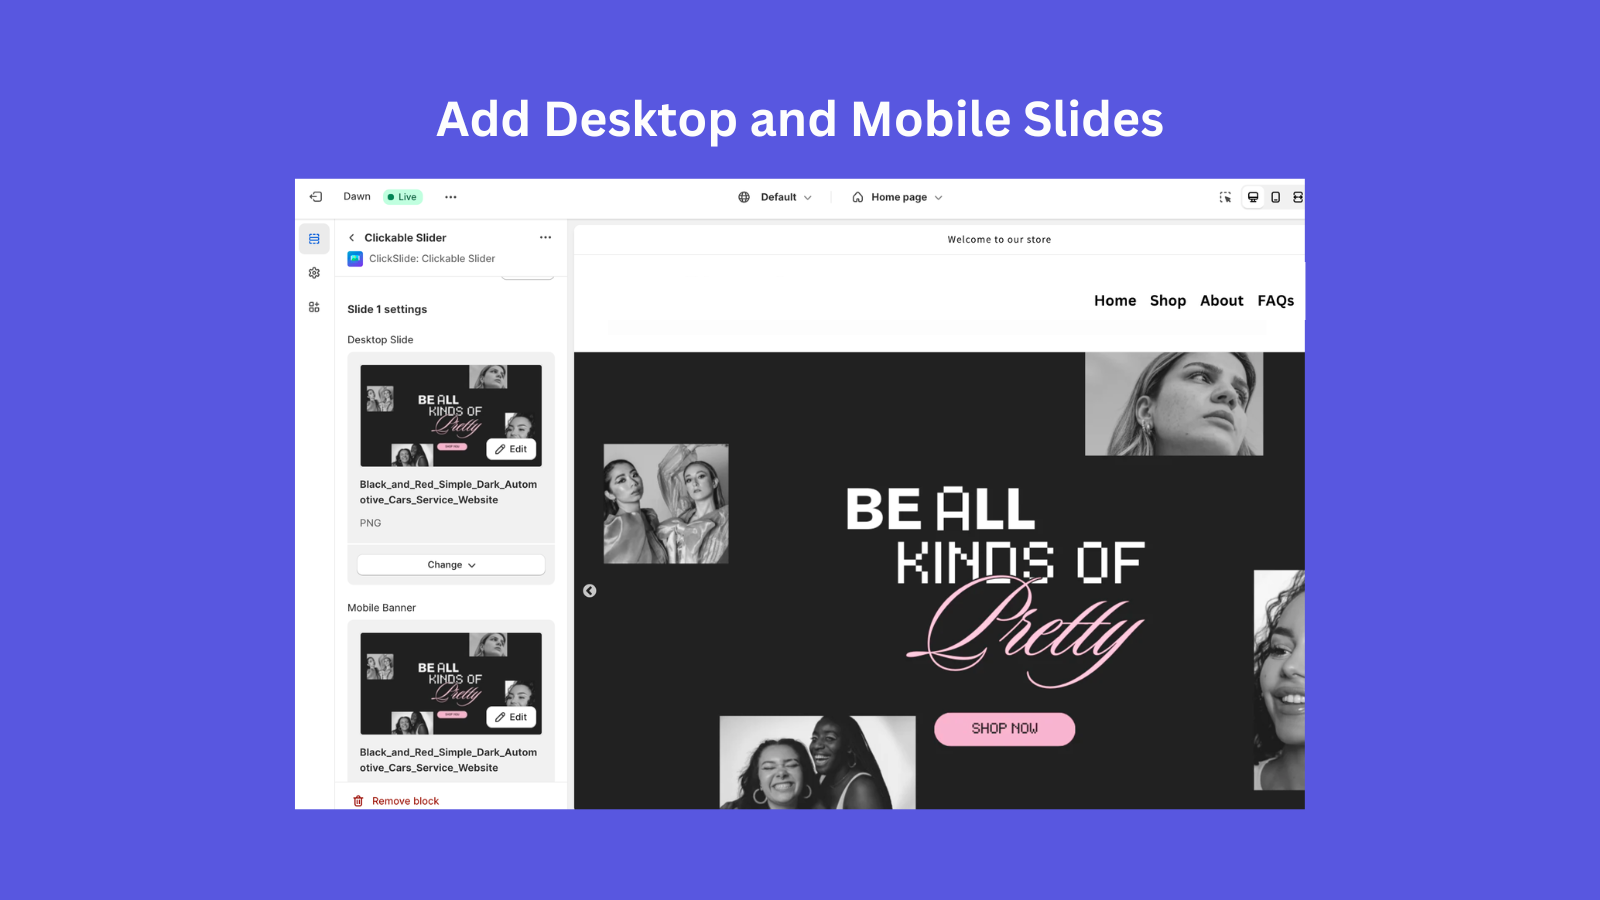 Add desktop and mobile slides